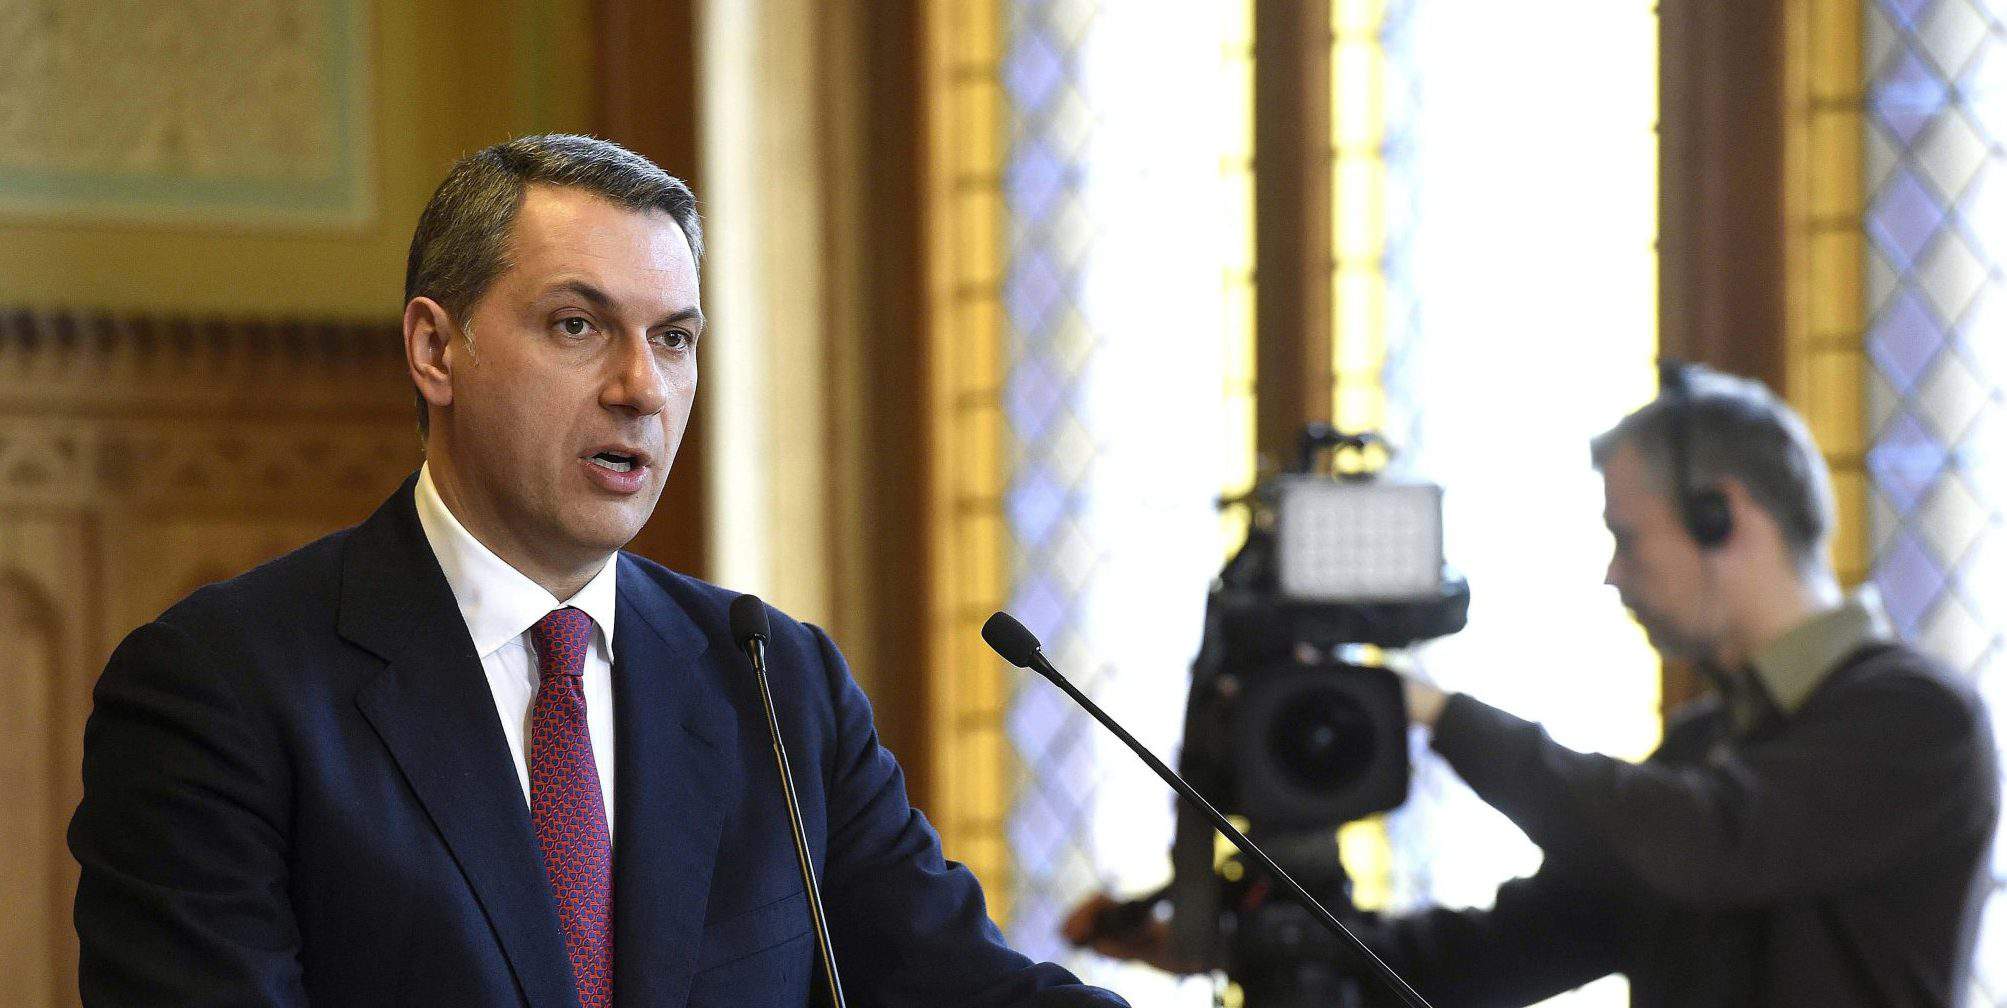 lázár jános ministar mađarske vlade